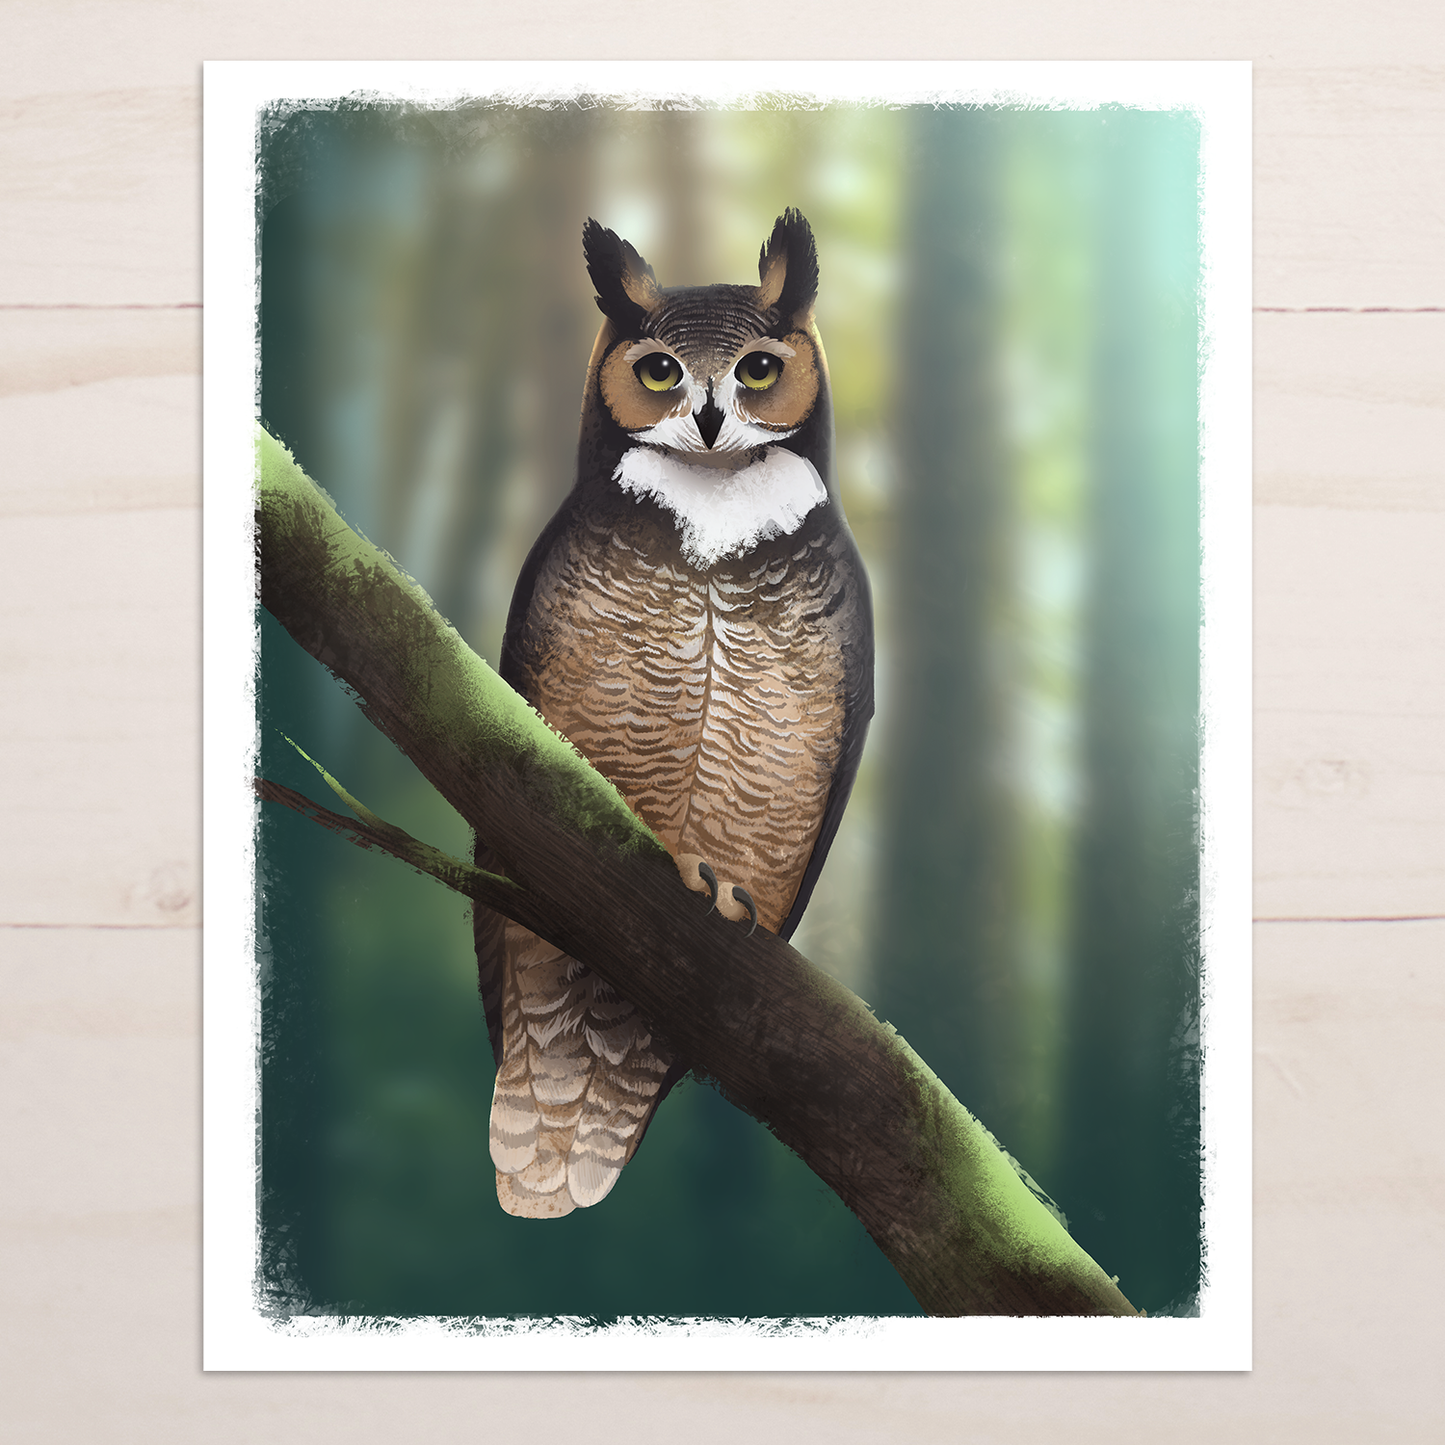 Great Horned Owl Art Print